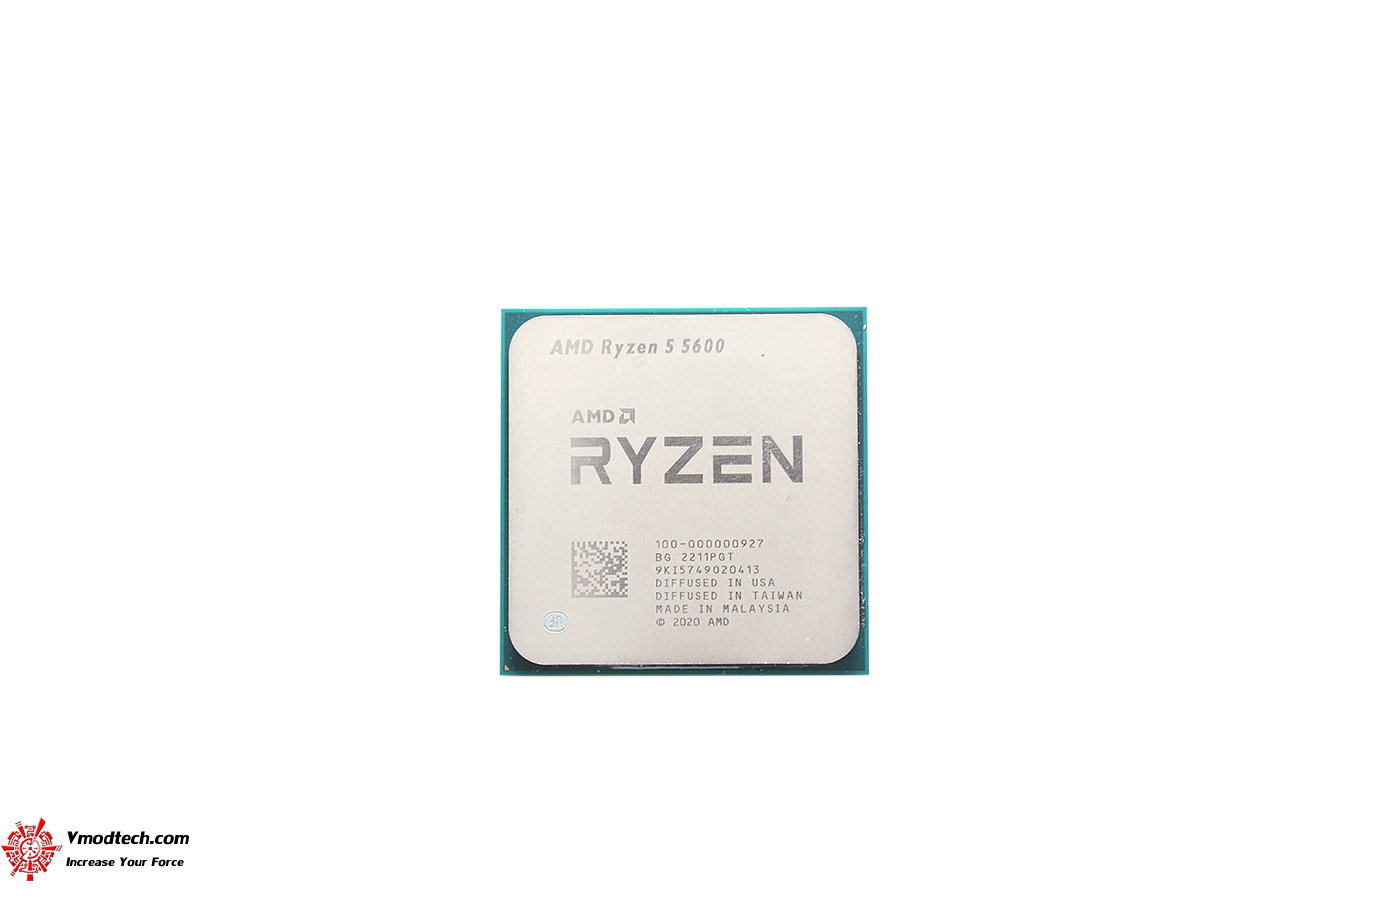 dsc 6564 AMD RYZEN 5 5600 PROCESSOR REVIEW